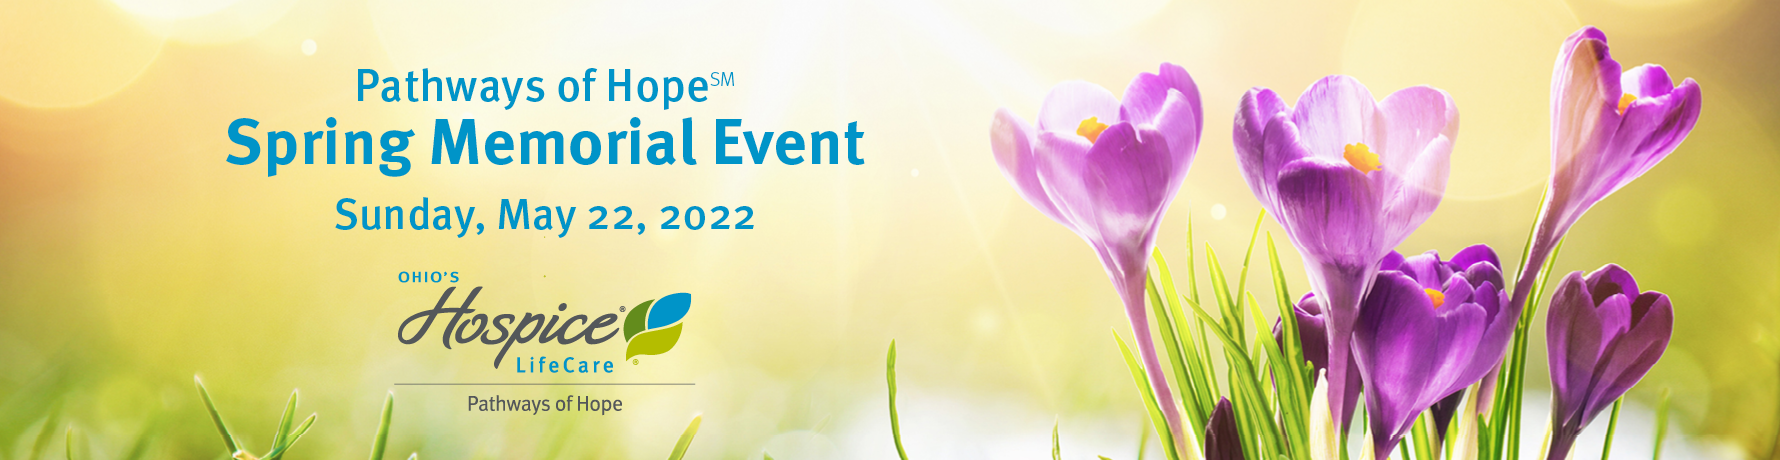 Spring Memorial Event 2022